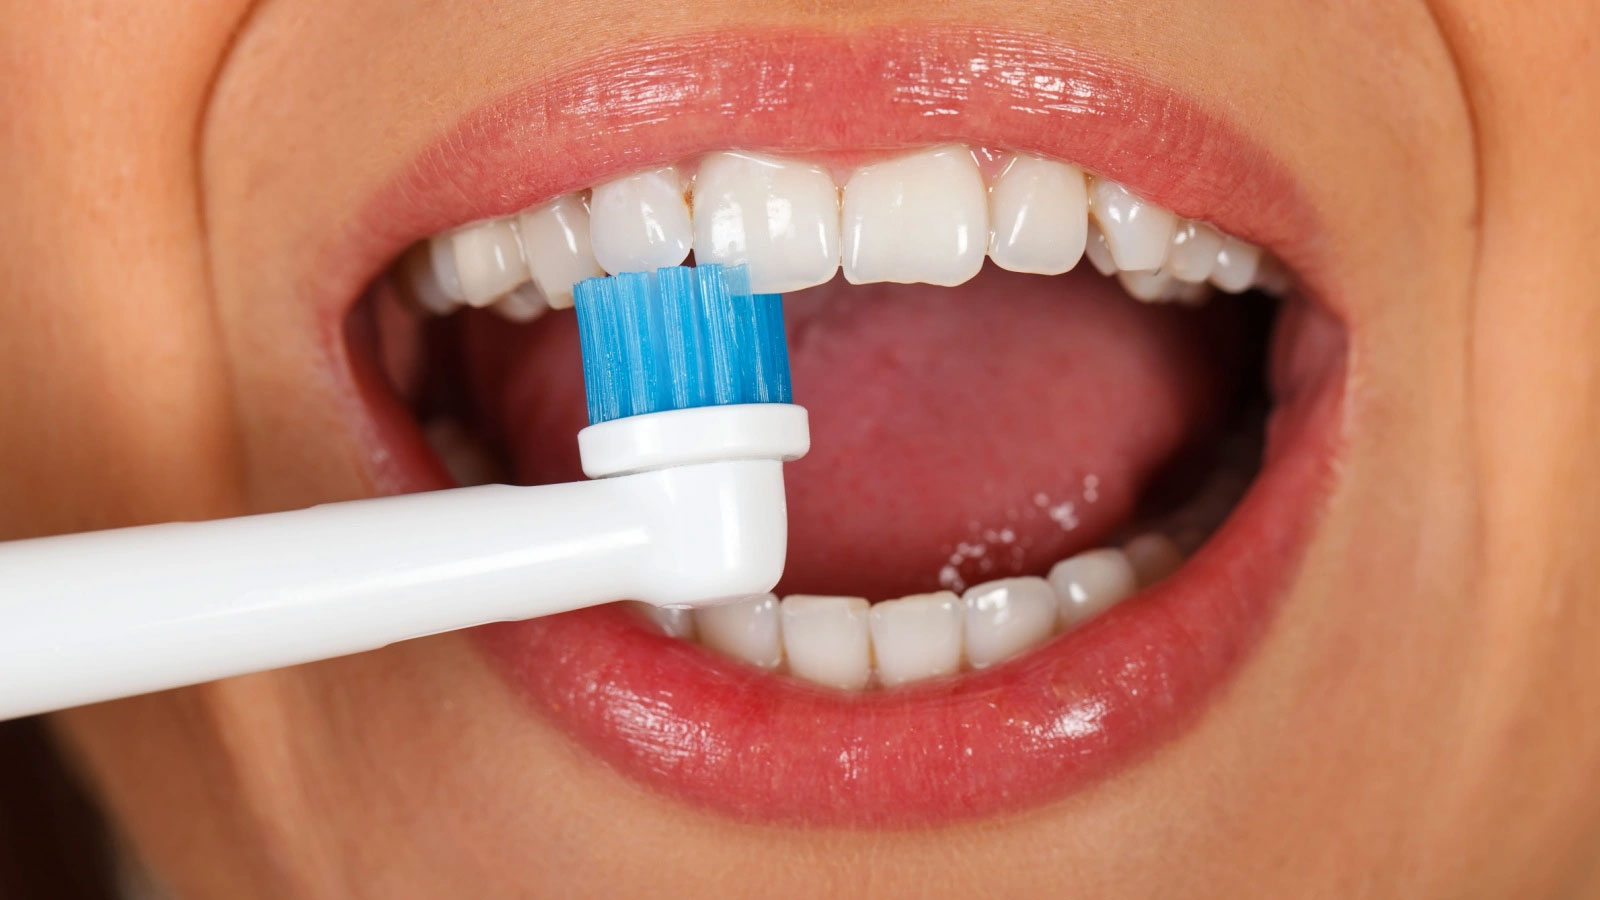 فوائد غسل الأسنان: تقليل احتمال الإصابة بالالتهاب الرئوي في المستشفى